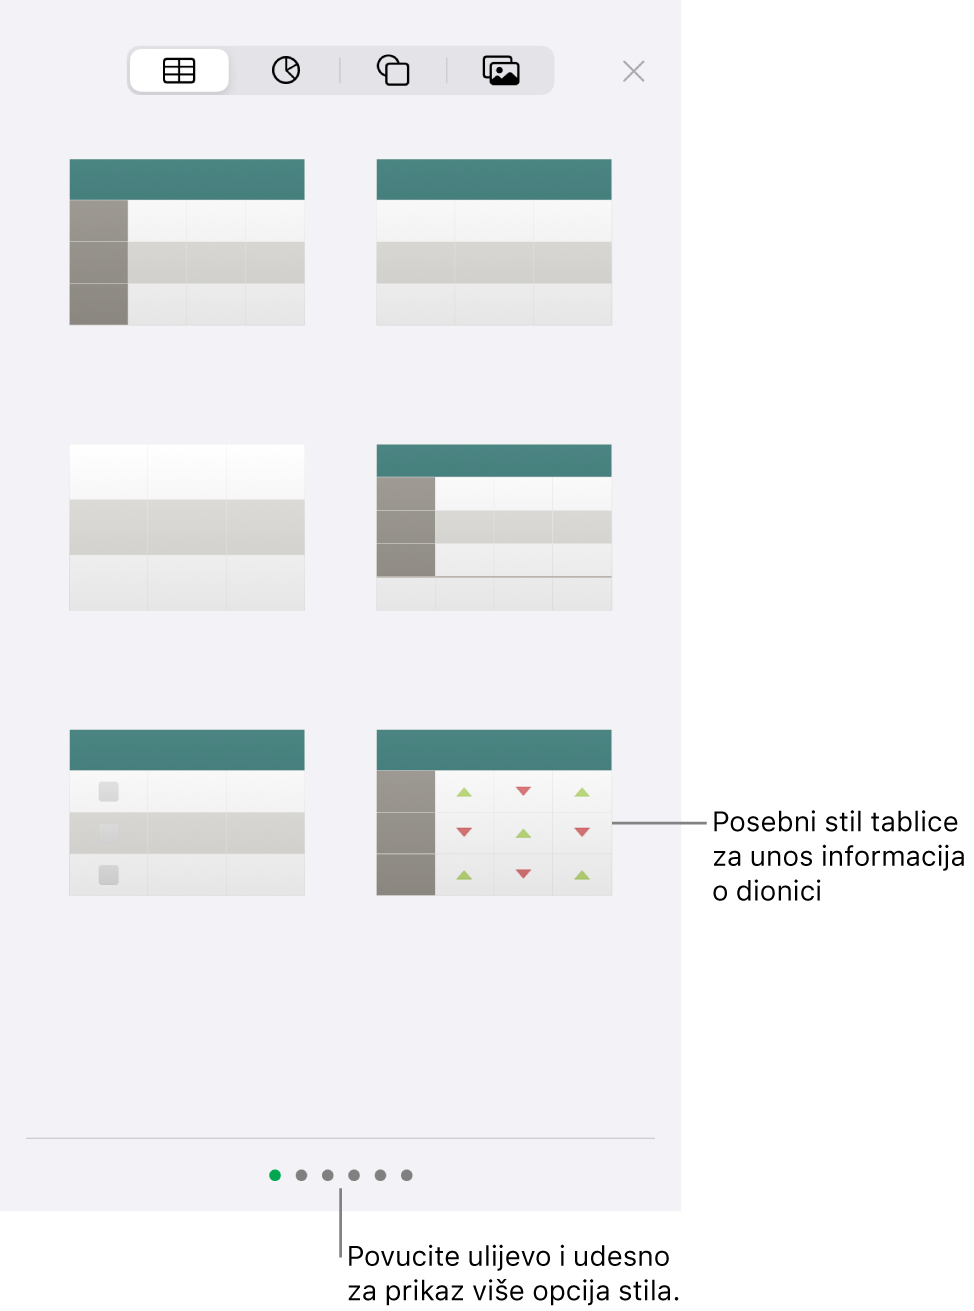 Minijature dostupnih stilova tablica, s posebnim stilom za unos informacija o dionici u donjem desnom kutu. Šest točaka na dnu označavaju da možete povući za prikaz ostalih stilova.